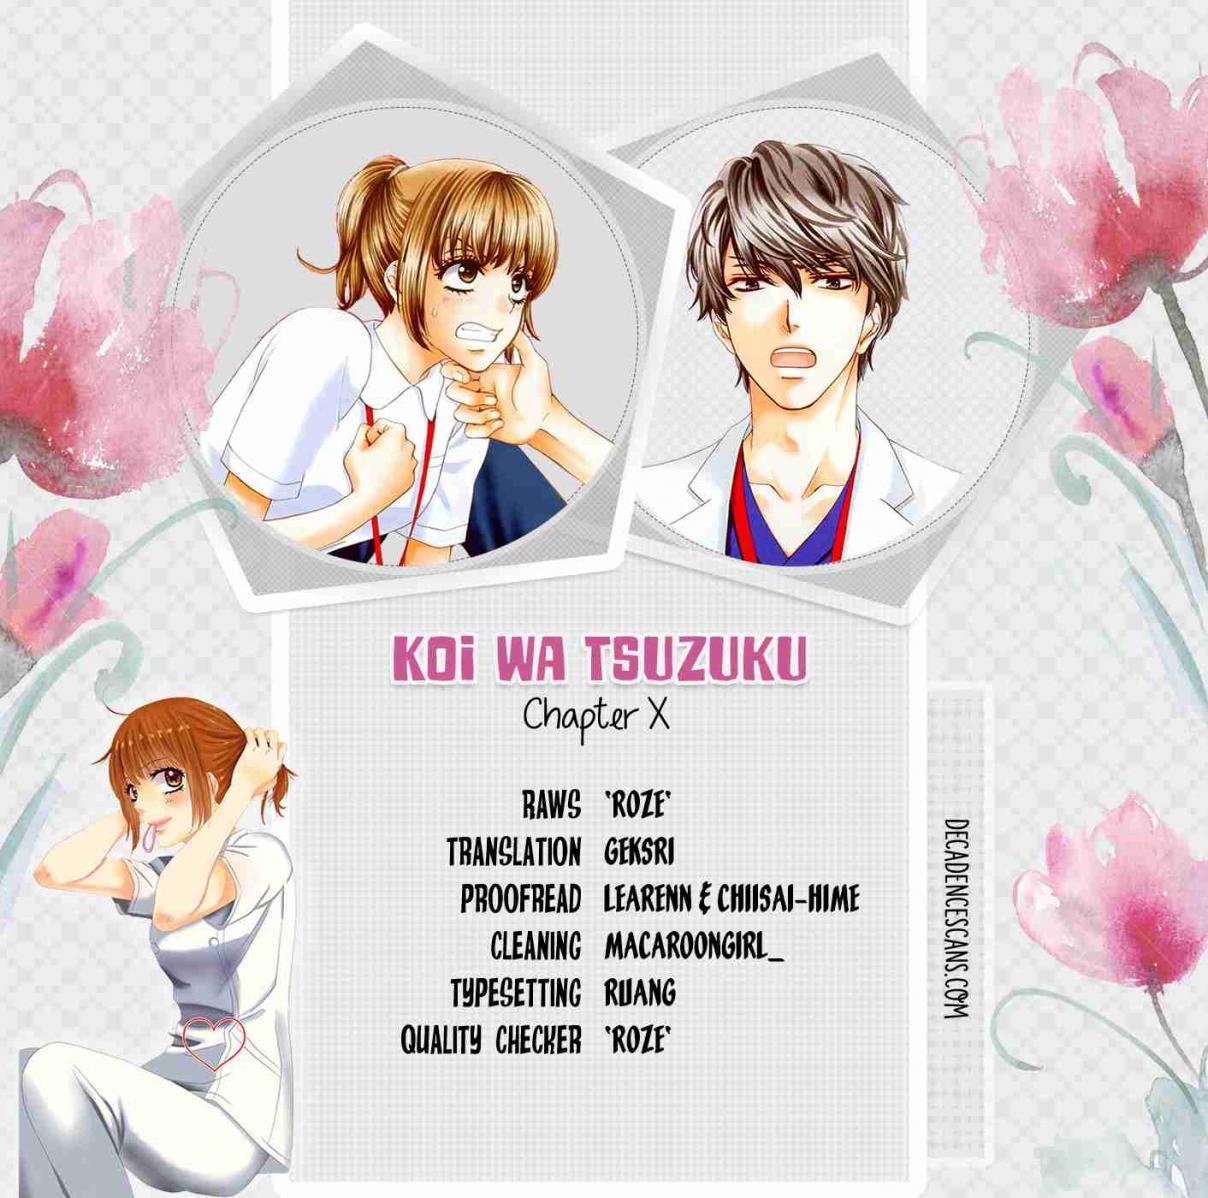 Koi wa Tsuzuku yo Dokomade mo Vol. 2 Ch. 8 8th ♥ Love